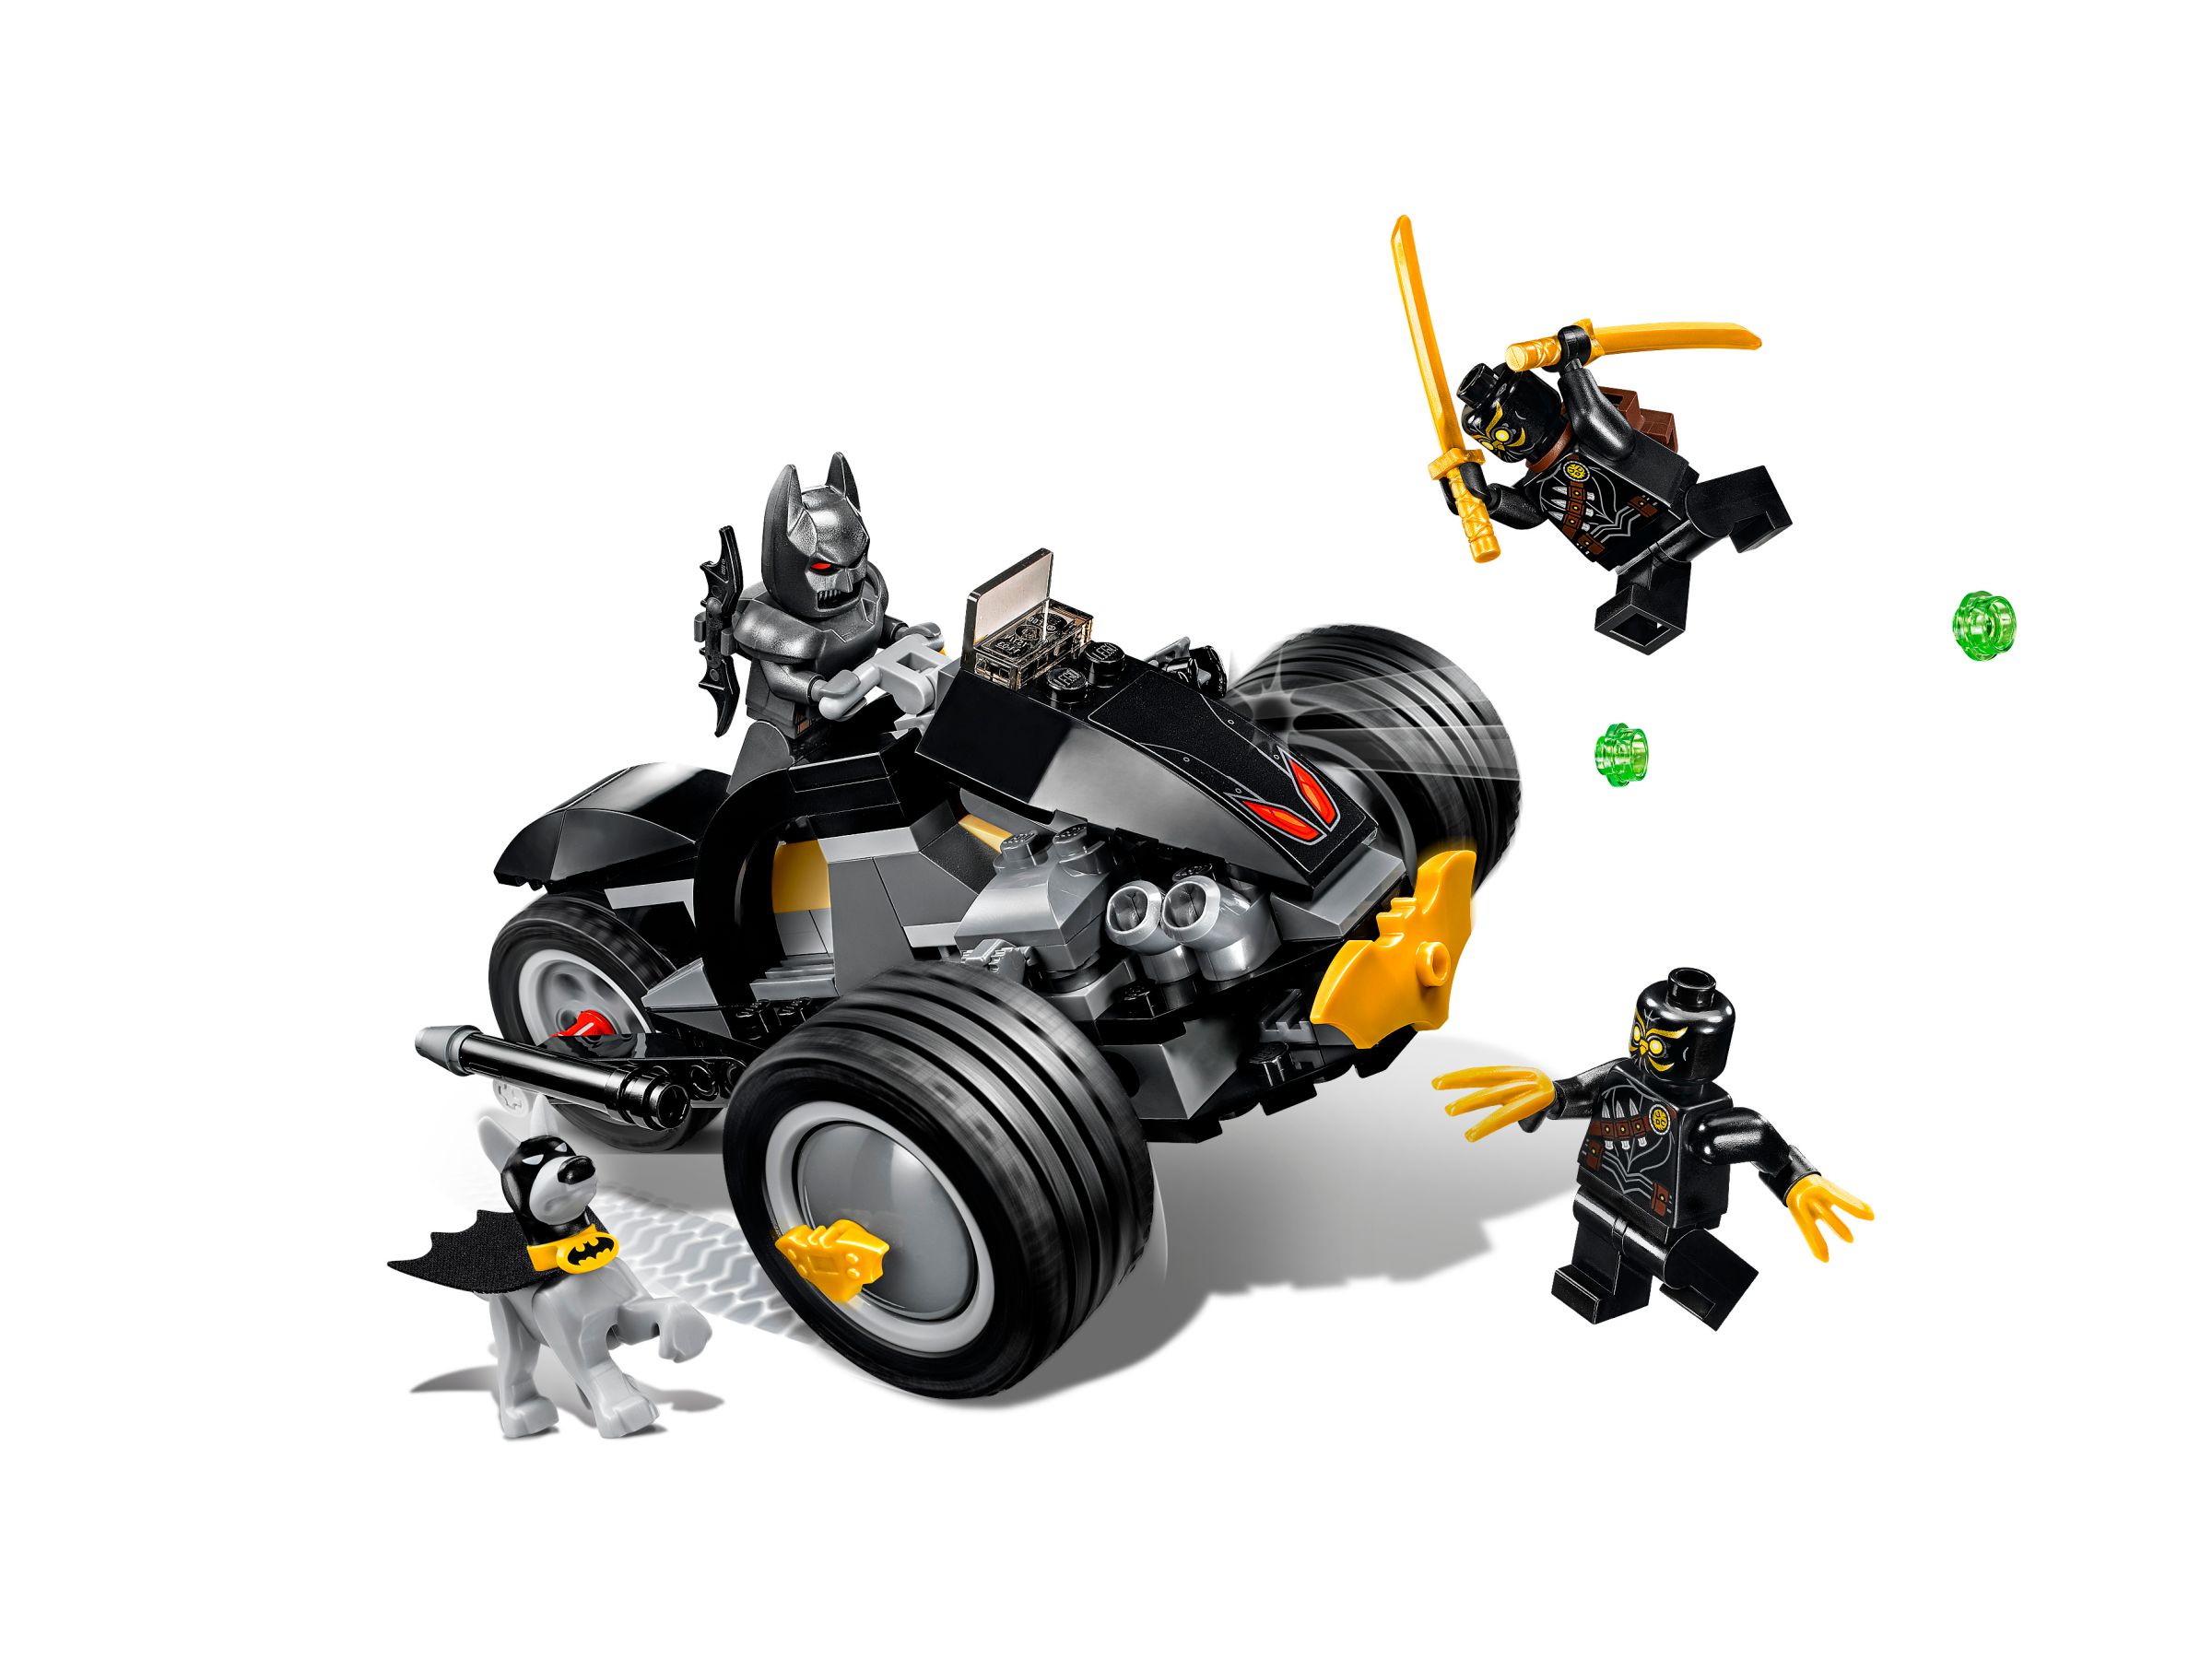 LEGO Super Heroes 76110 Batman™: Attacke der Talons LEGO_76110_alt2.jpg